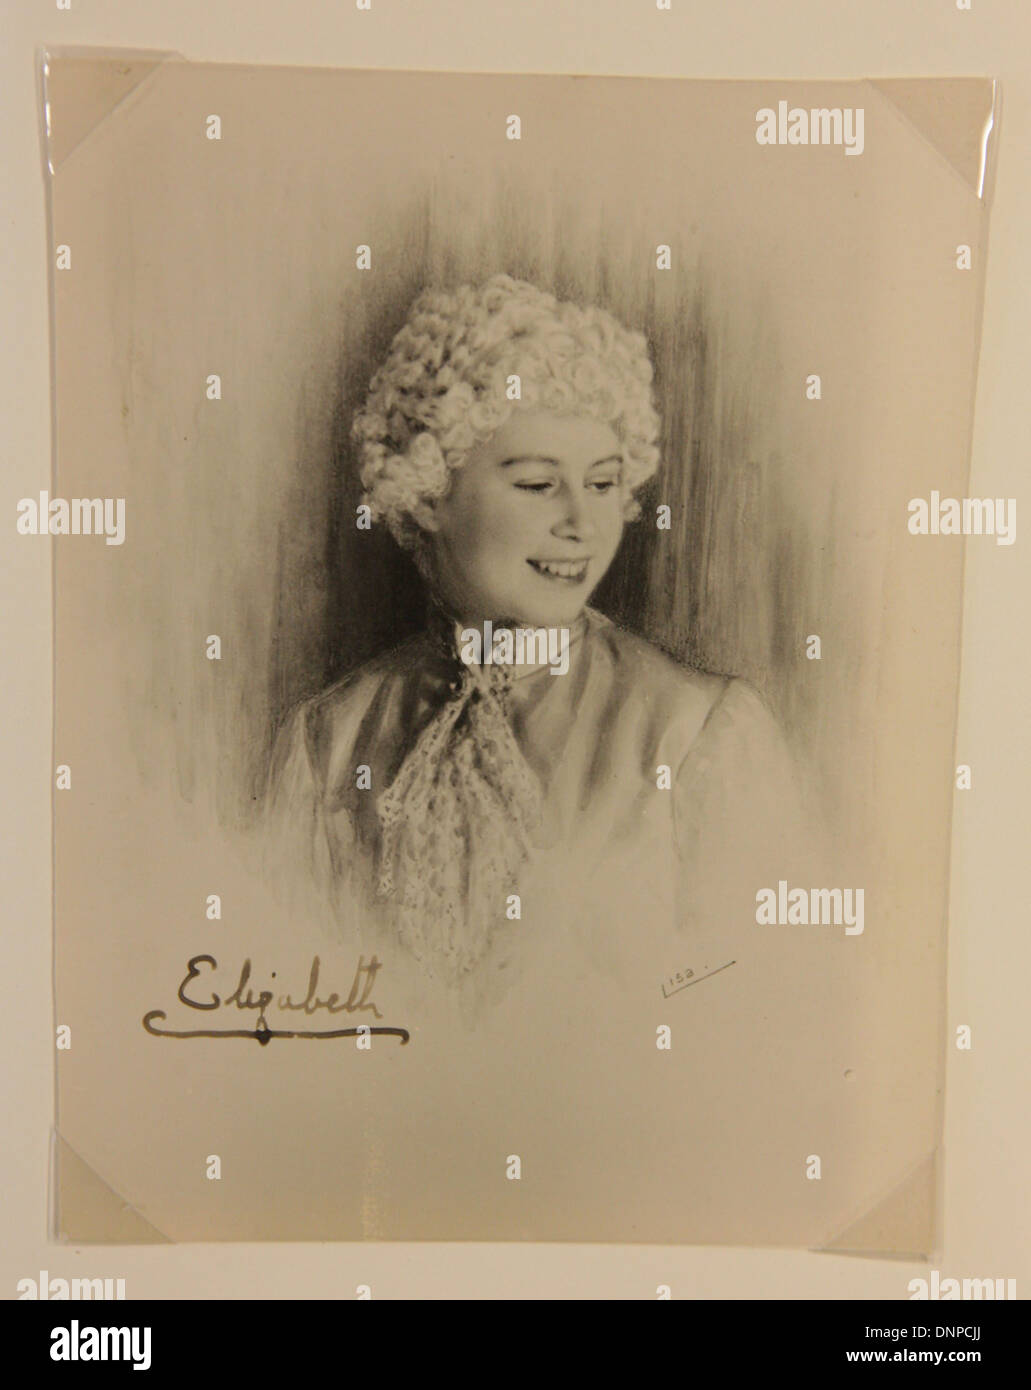 Recueillir des photographie de la princesse Elizabeth dans la jouer Cendrillon, 1941 Banque D'Images